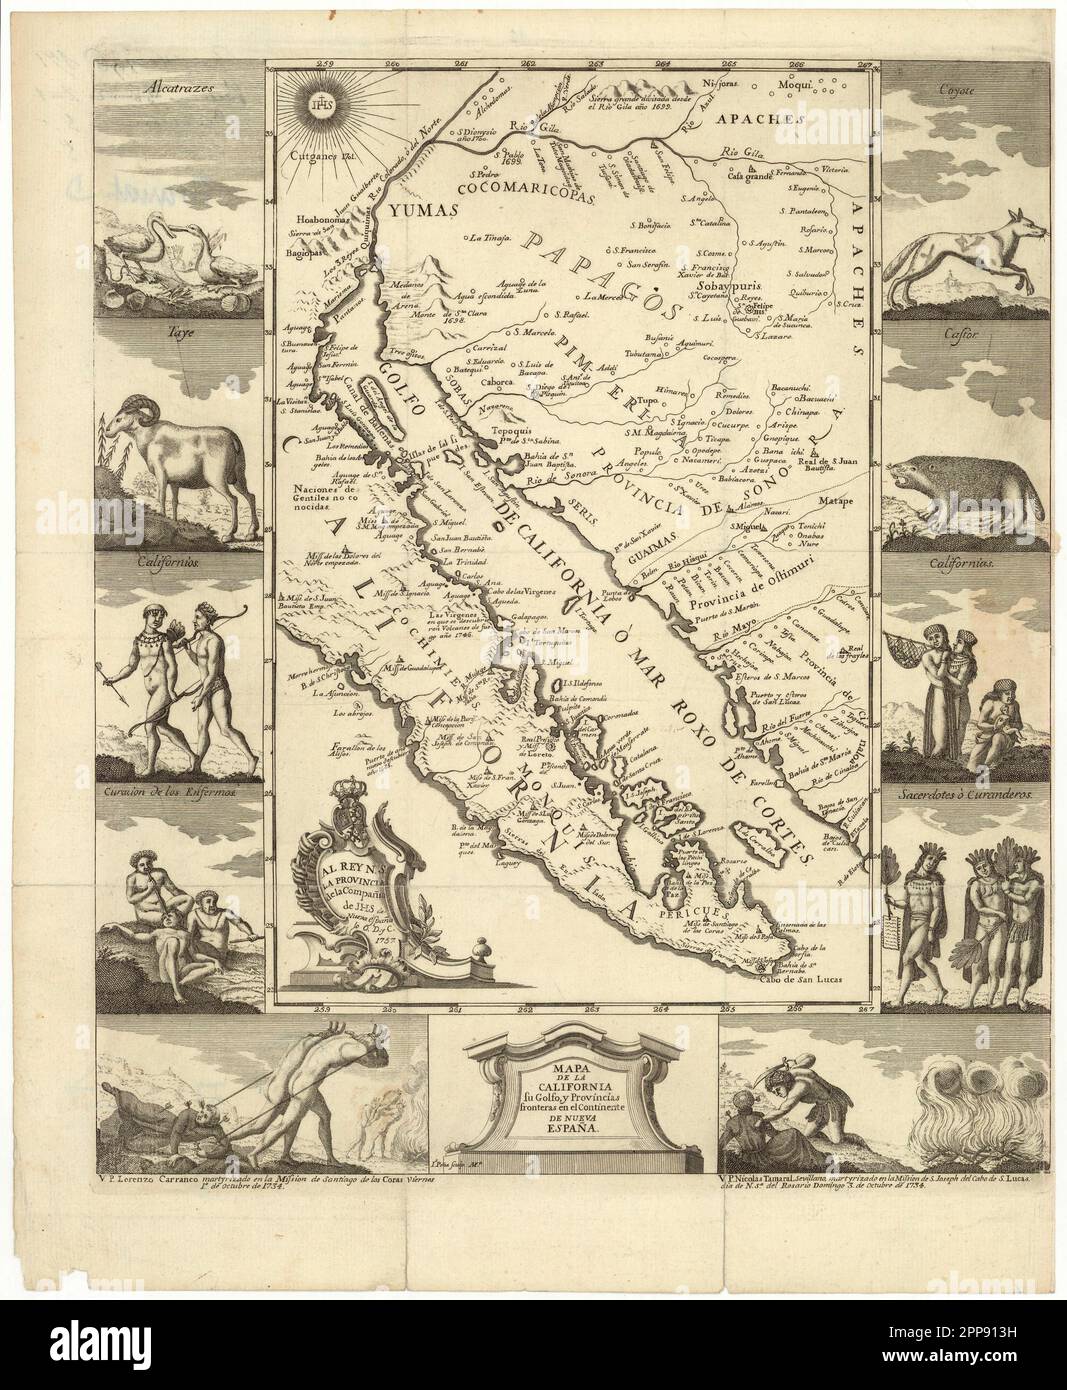 Mapa ilustrado vintage c. 1757 del bajo California, ahora la península de Baja California en México, y el mar de Cortés (Golfo de California). Las ilustraciones muestran a los pueblos indígenas y el martirio de los misioneros cristianos Foto de stock